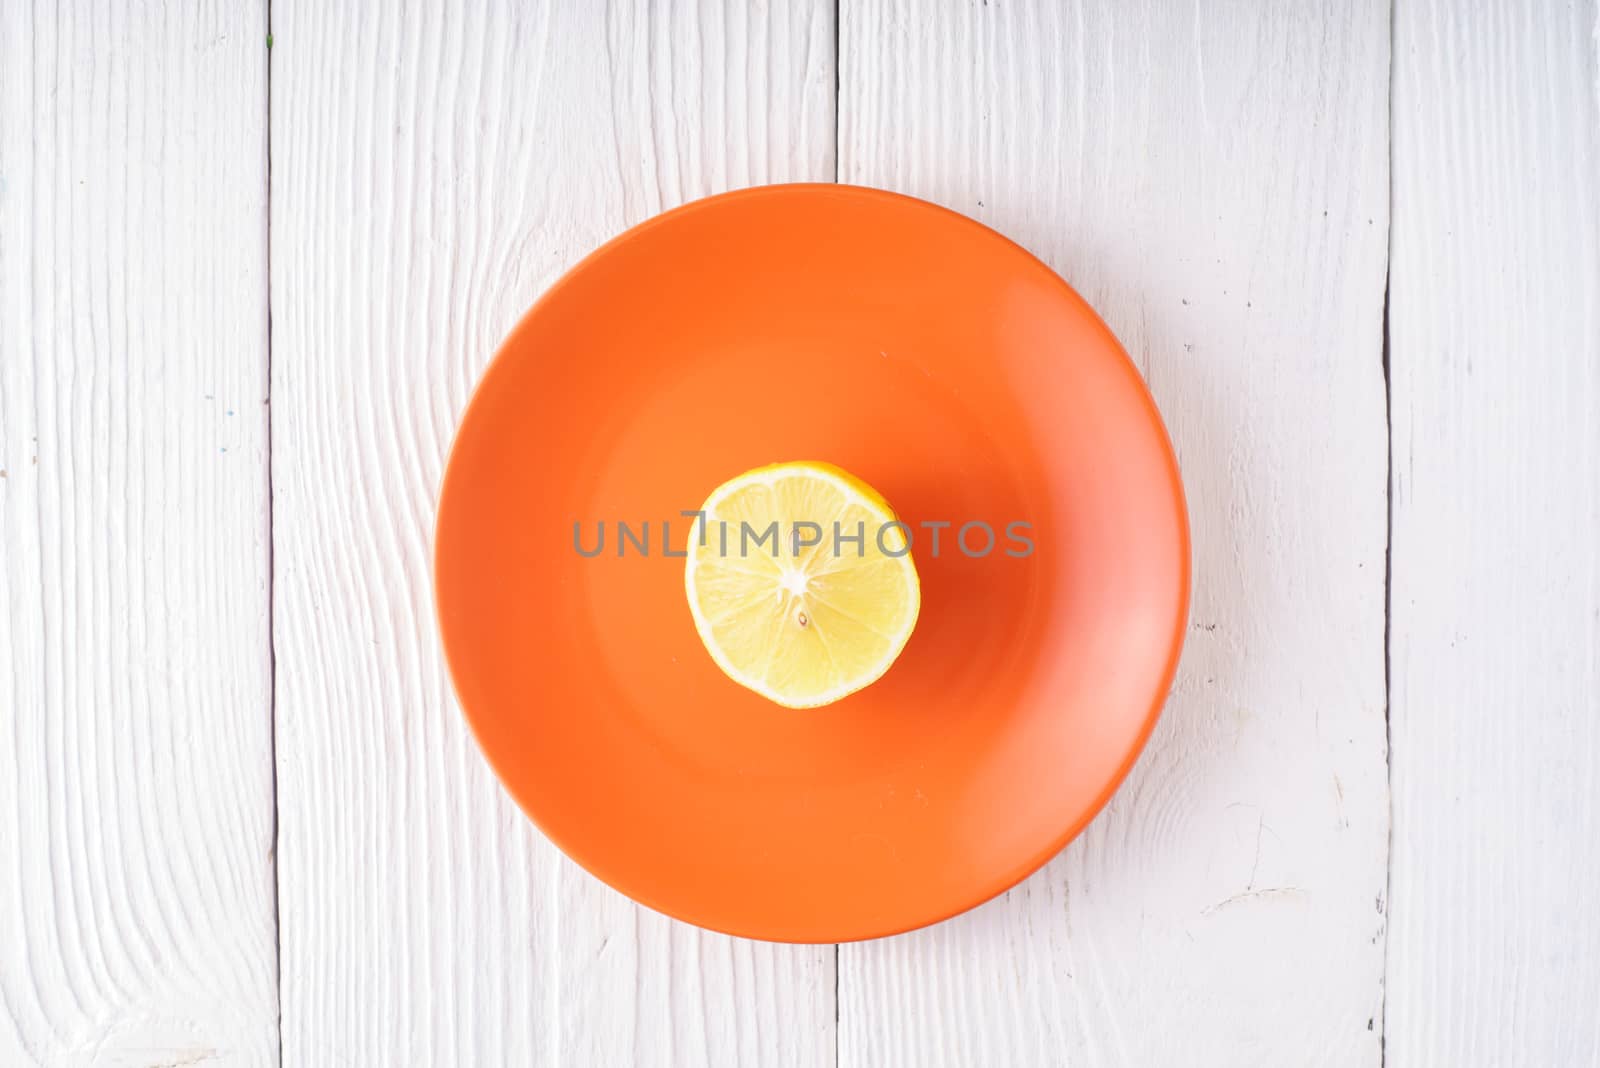 Half of lemon on orange plate horizontal